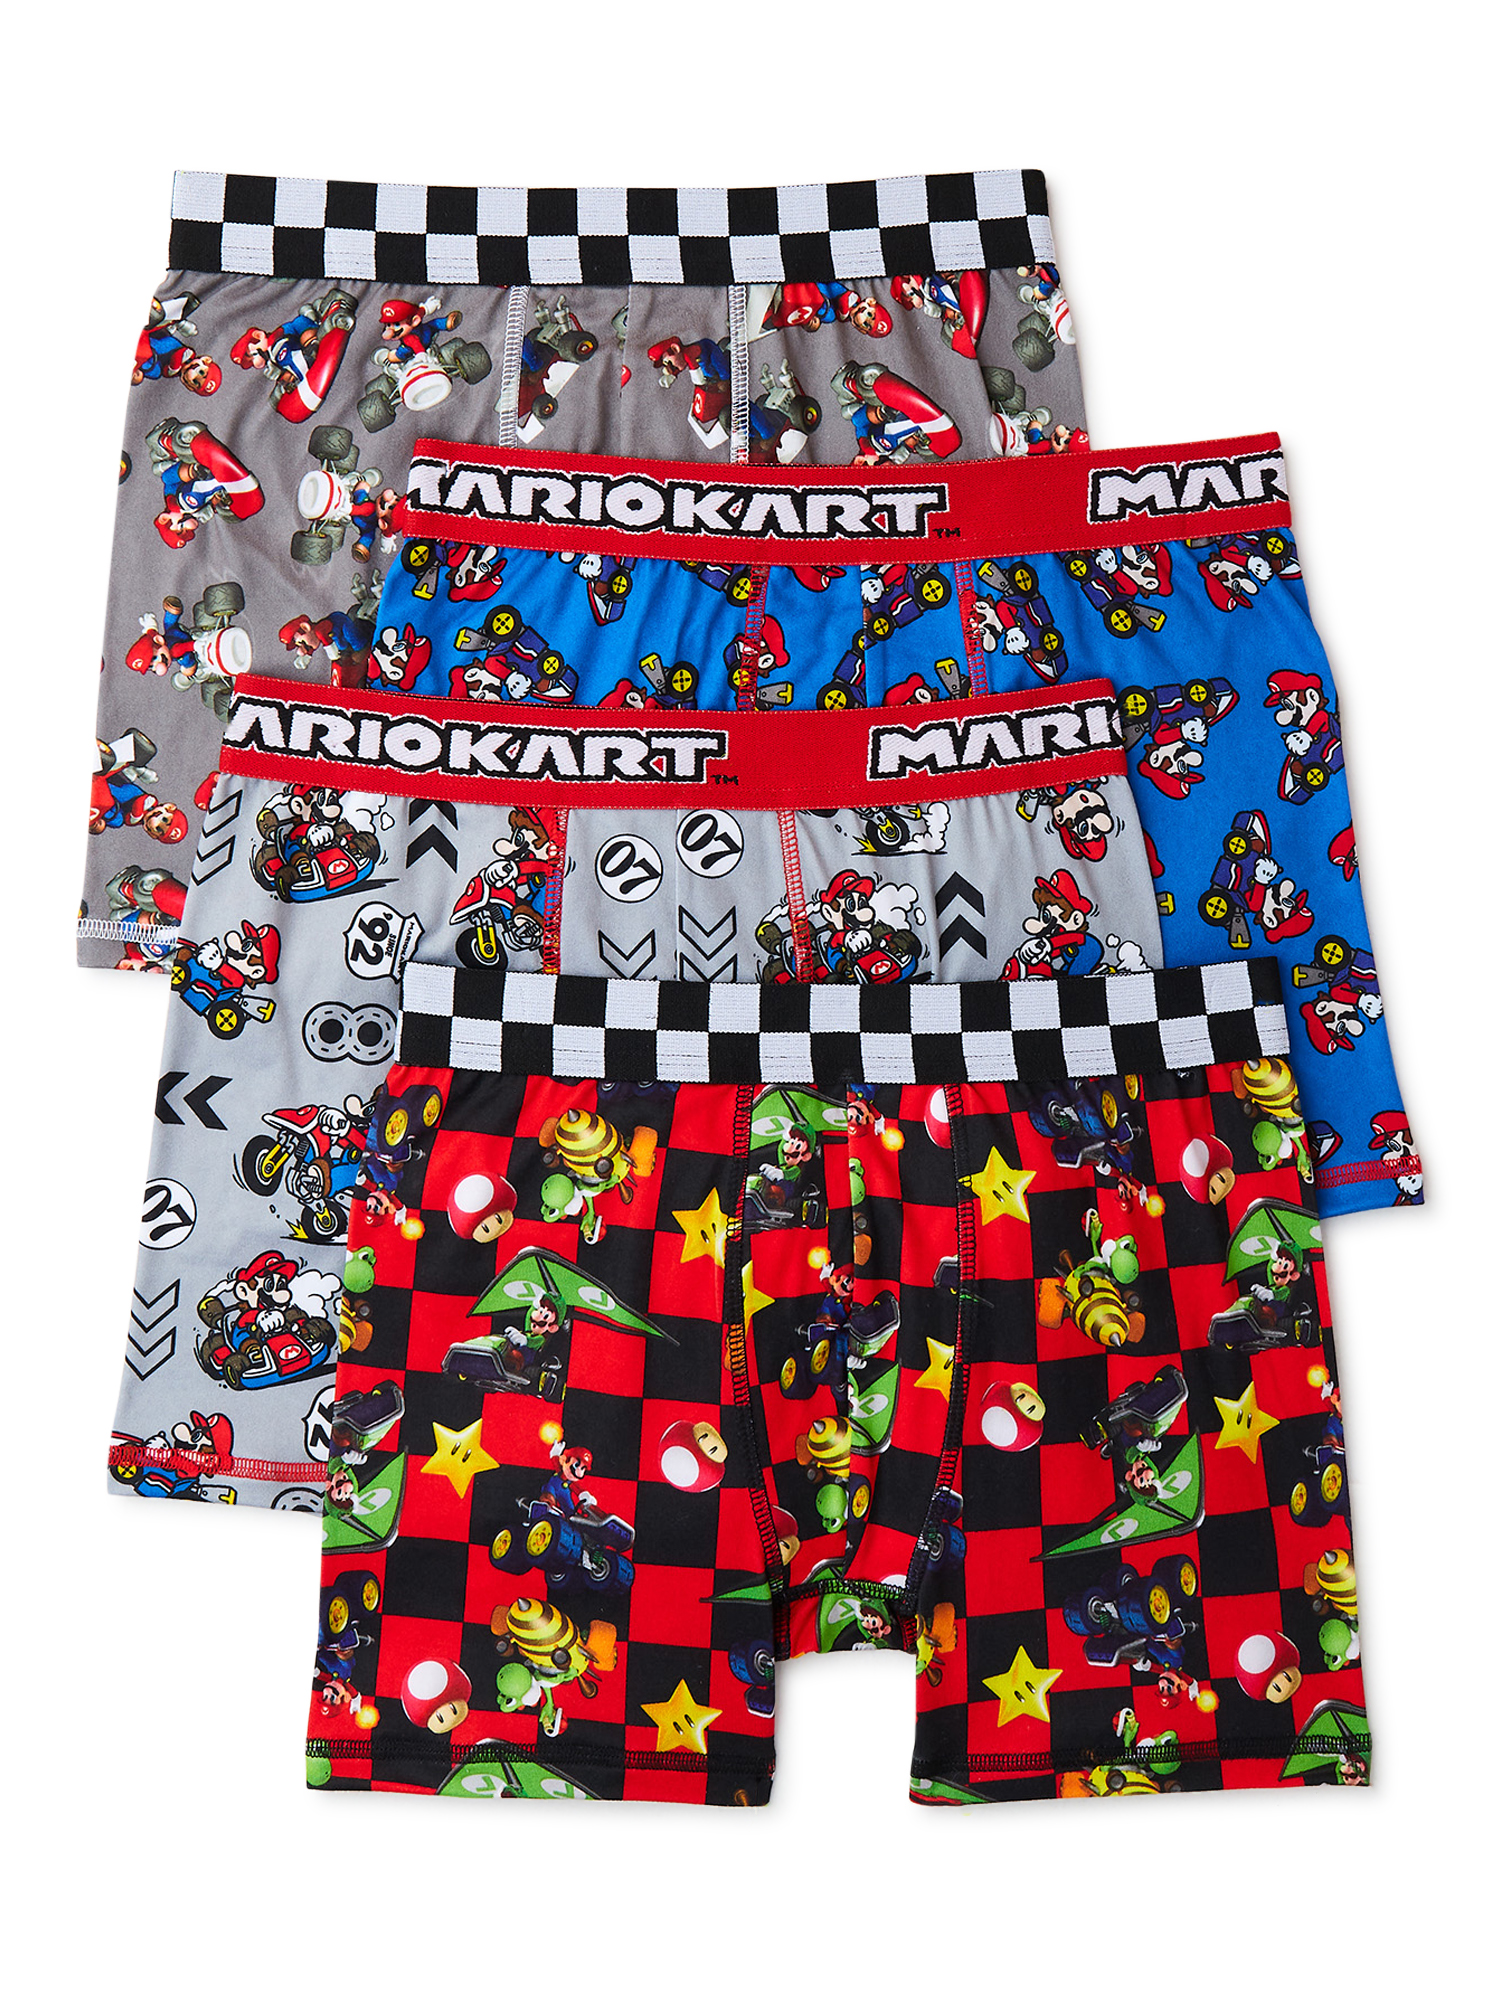 Super Mario Bros. Mario Kart Boy's Boxer Briefs Underwear, 4-Pack, Sizes 4-10